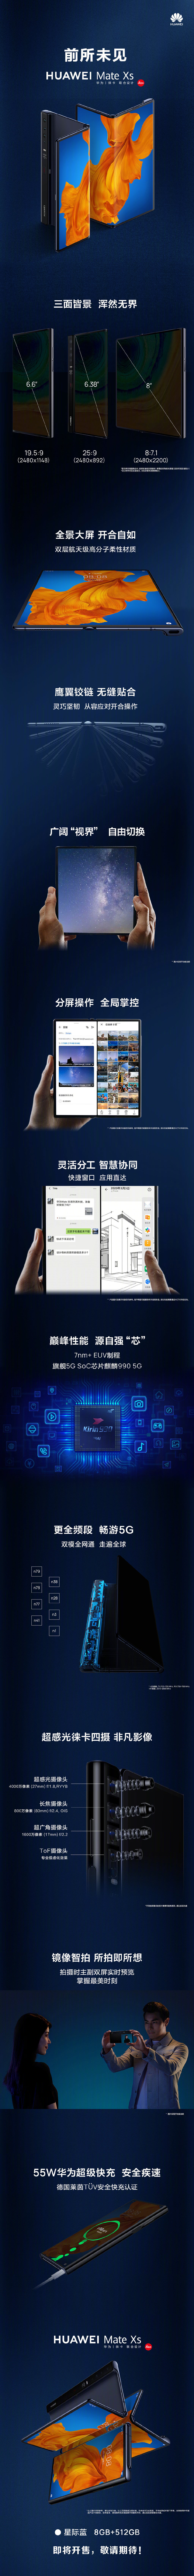 华为新一代折叠屏手机Mate XS国行售价16999元